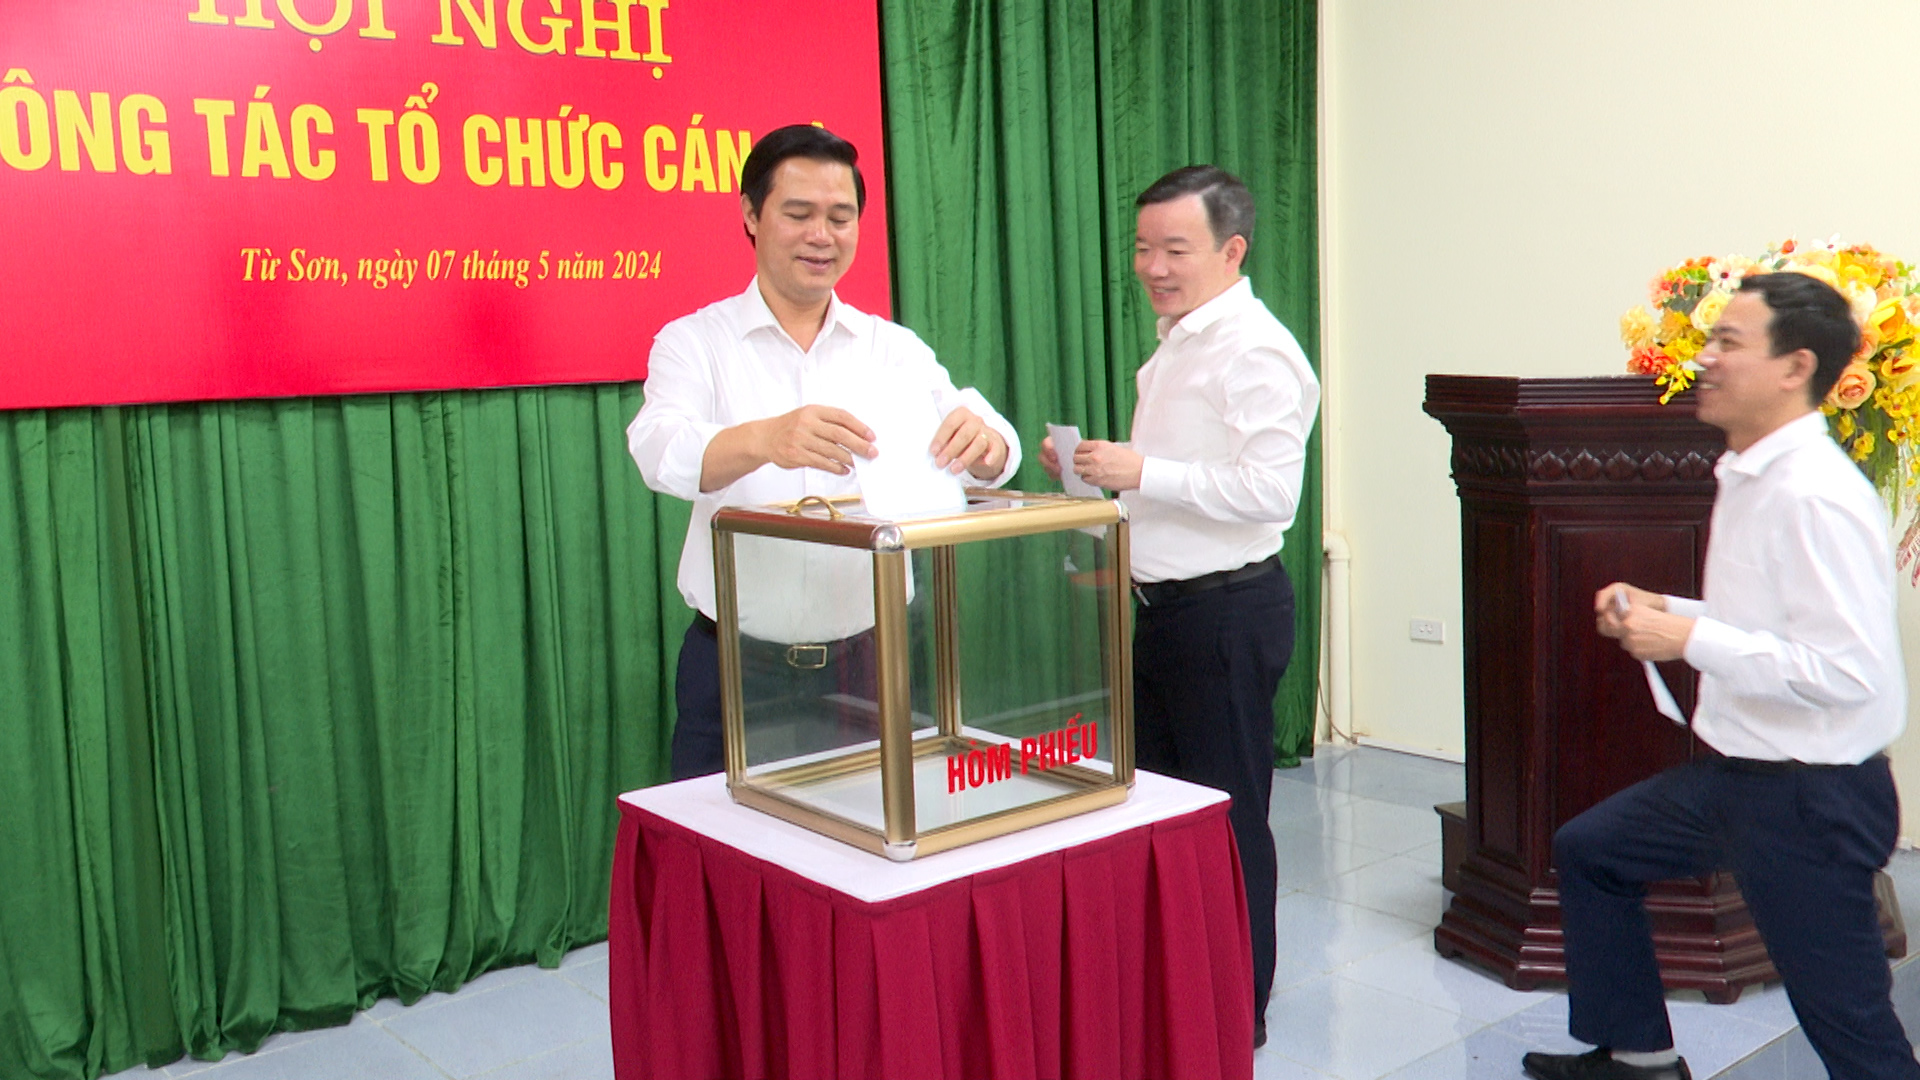 Từ Sơn thực hiện quy trình kiện toàn bổ sung chức danh Chủ tịch UBND Thành phố nhiệm kỳ 2021-2026